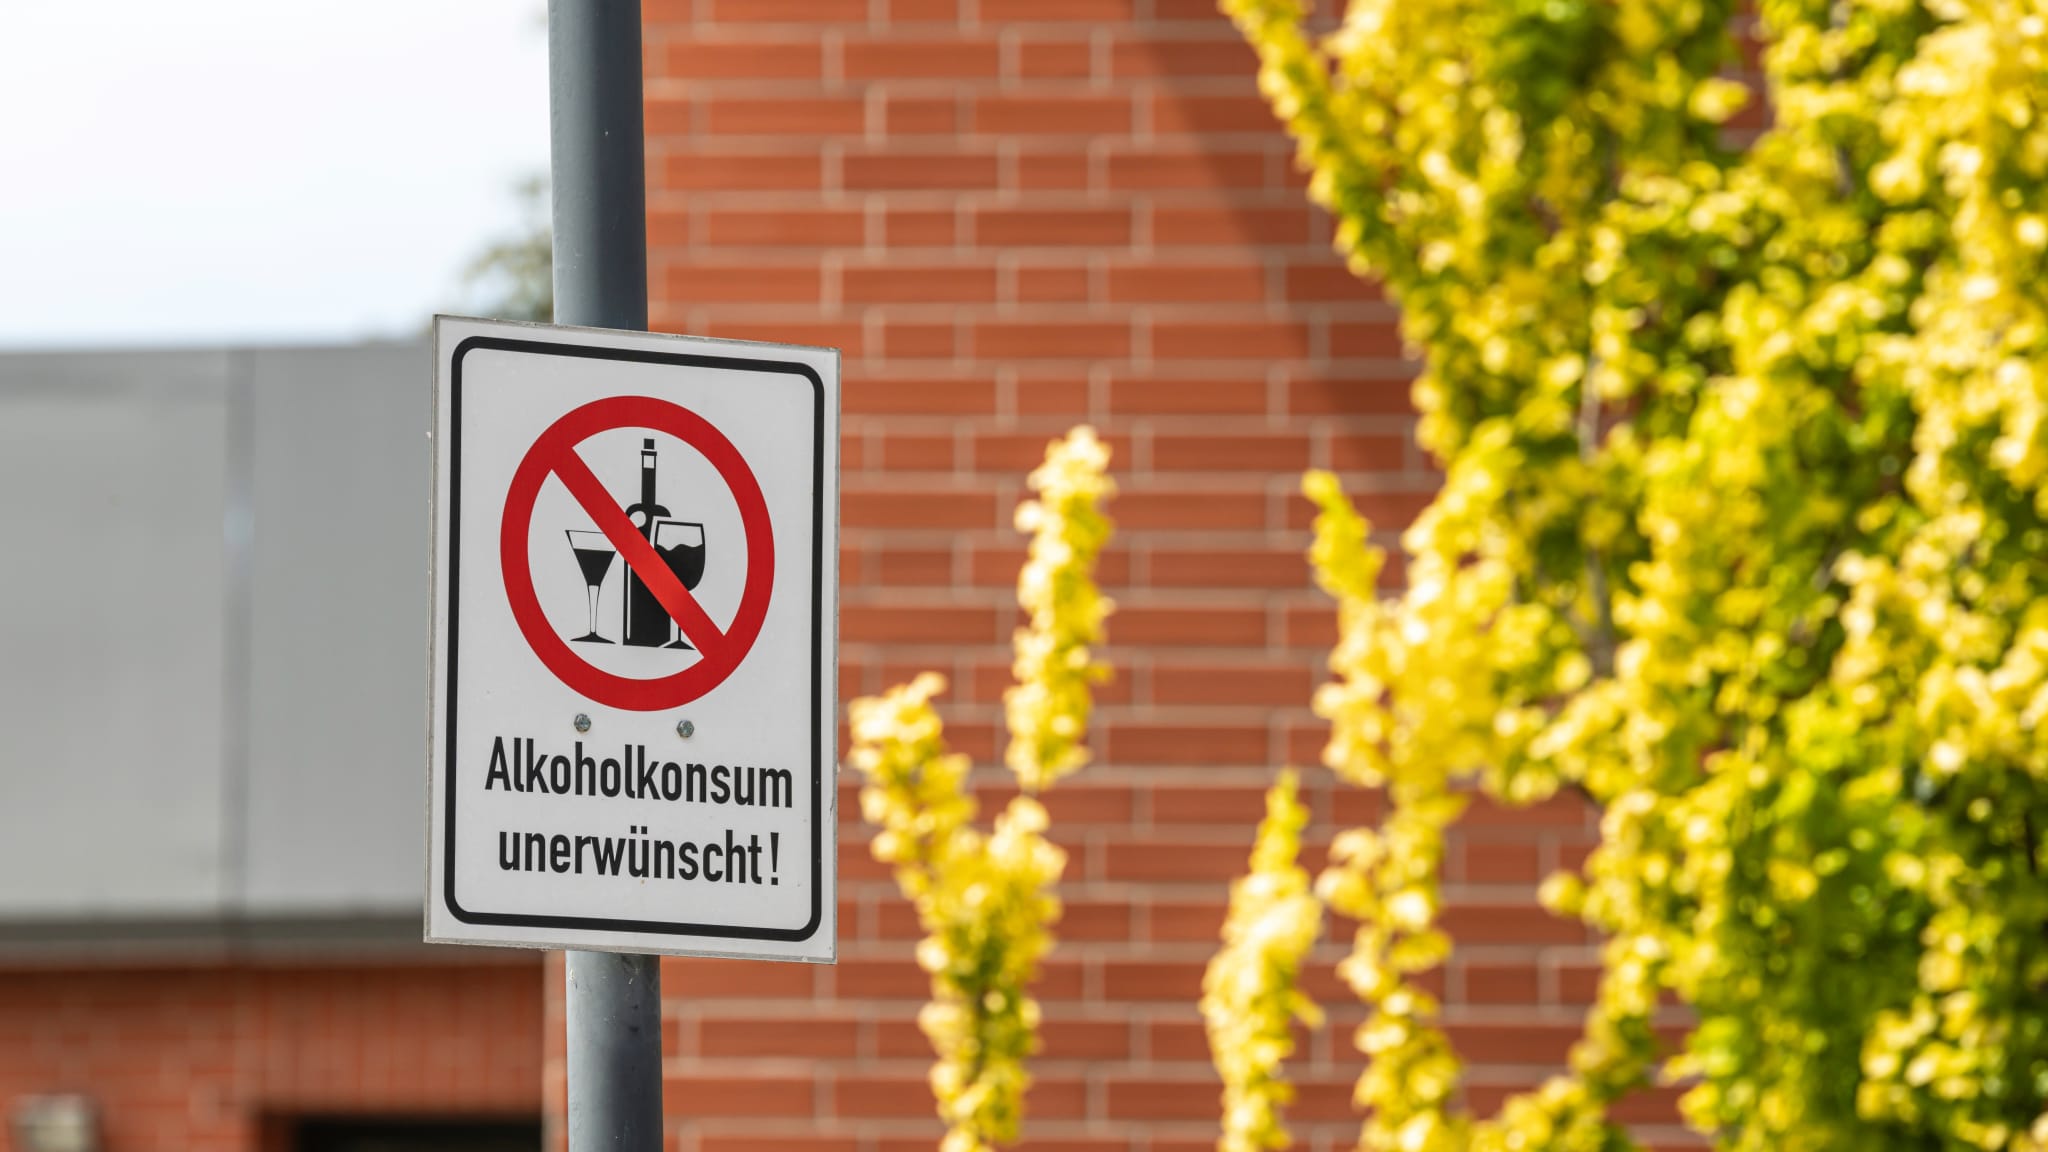 Auch in Deutschland gibt es Orte, wo Alkoholkonsum nicht erlaubt ist © Ronald Rampsch - stock.adobe.com